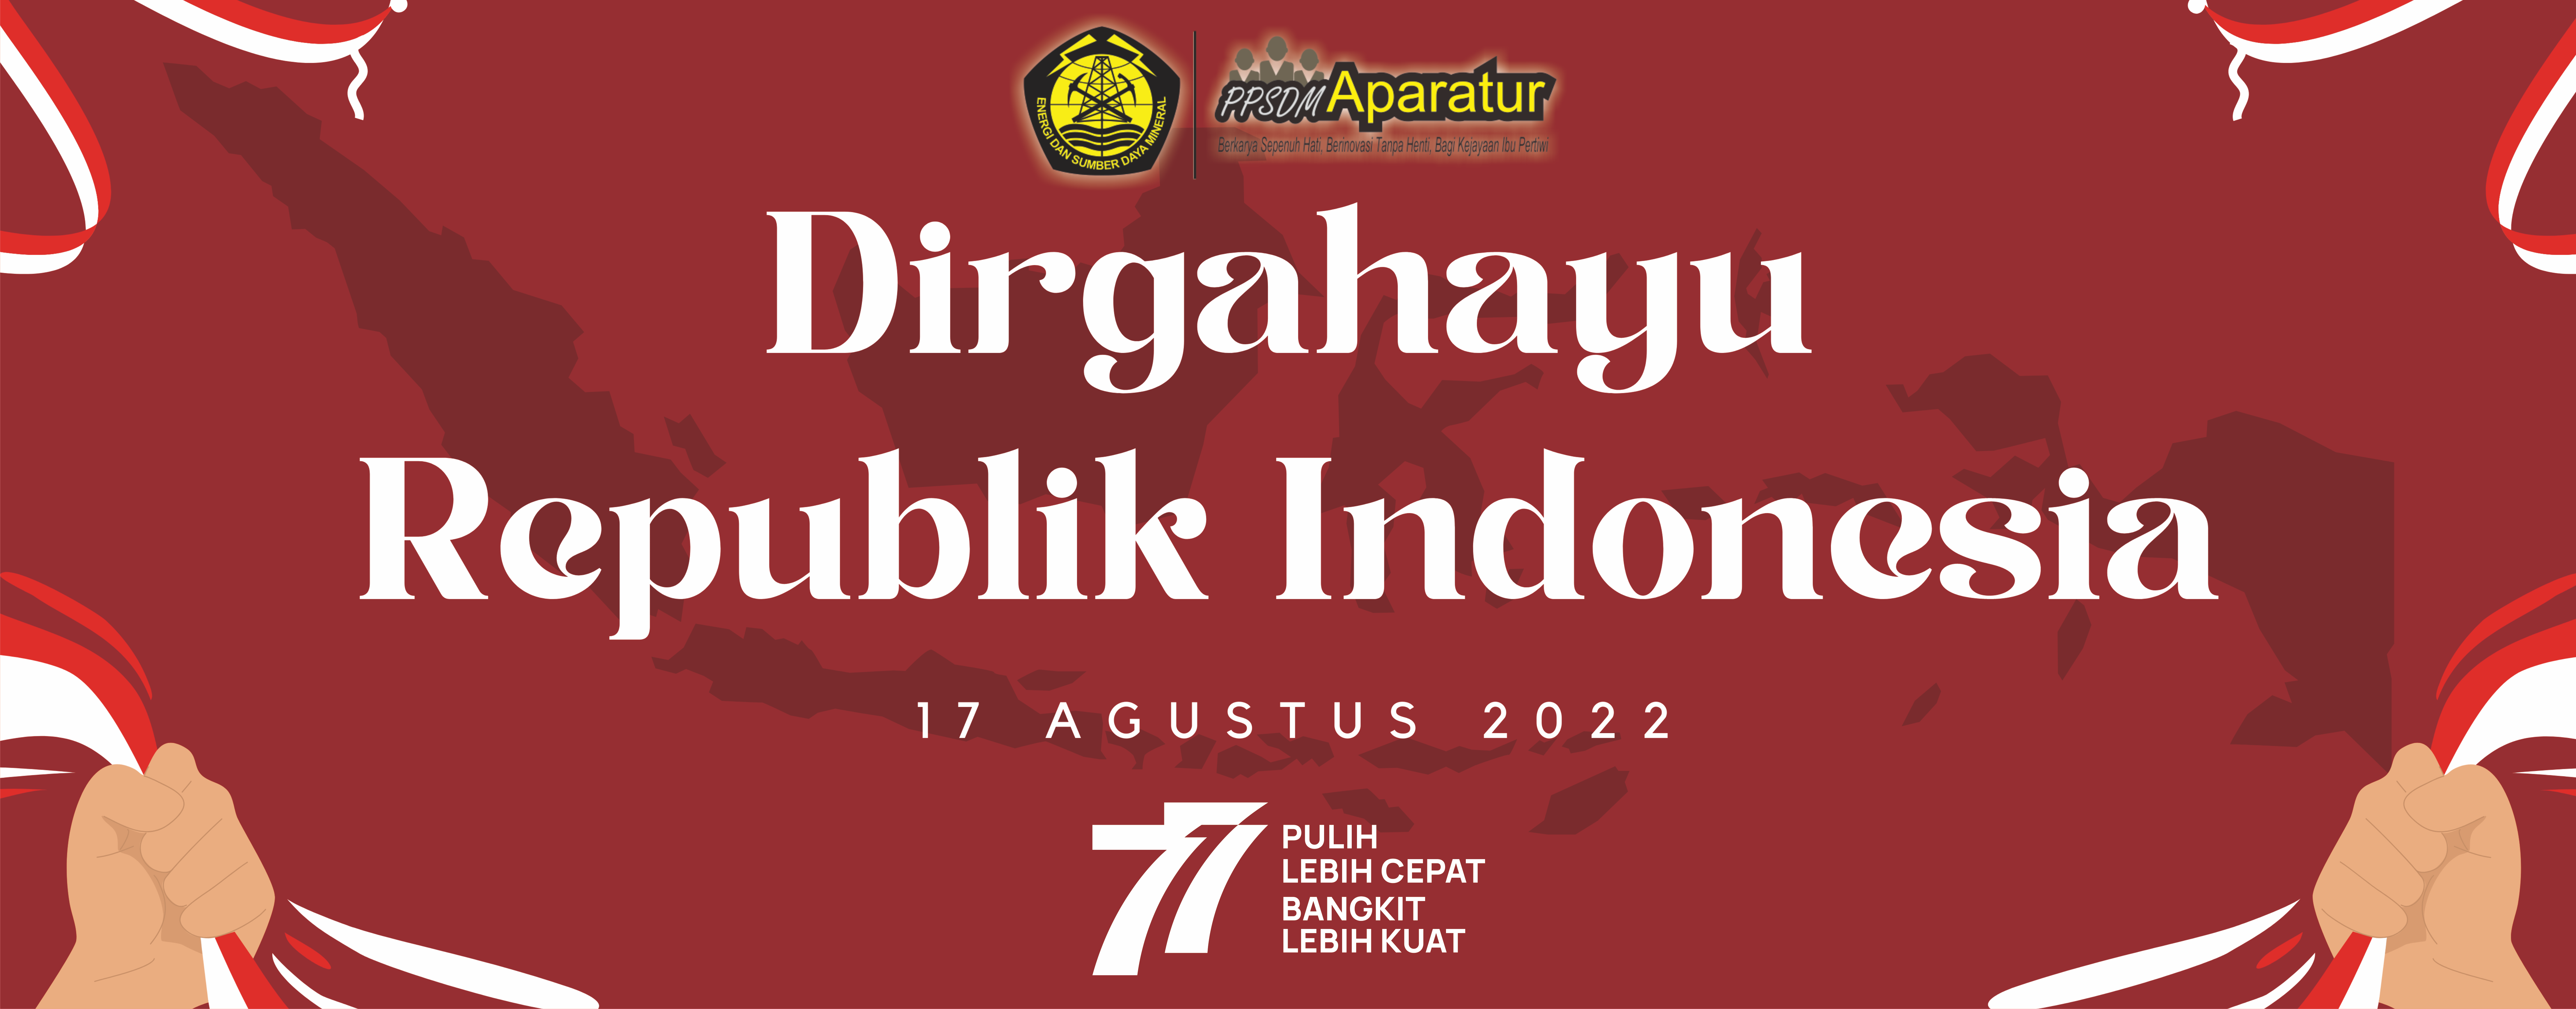 DIRGAHAYU REPUBLIK INDONESIA ke 77